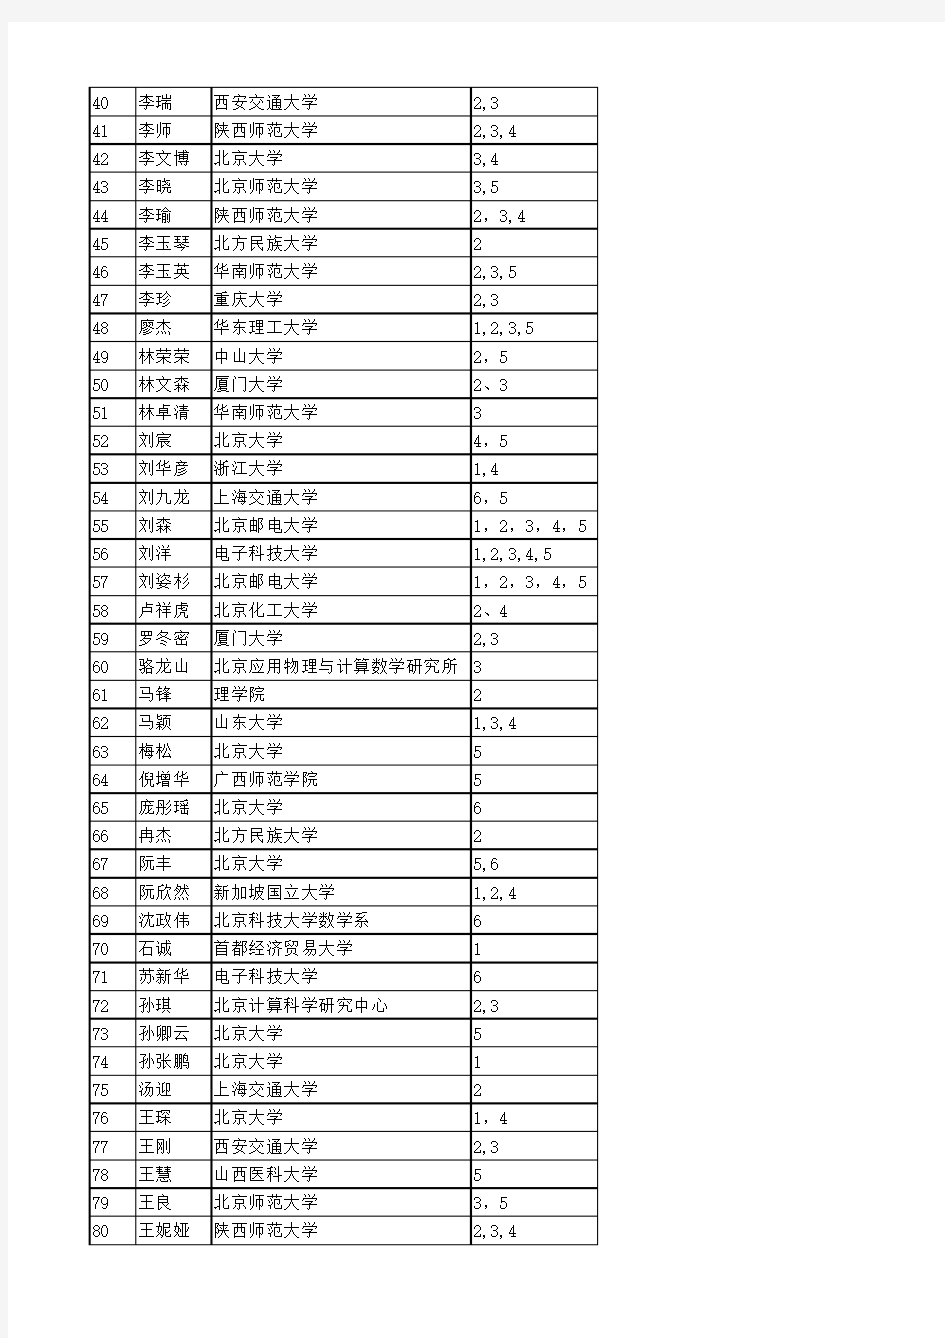 2013北京大学应用数学暑期学校录取名单